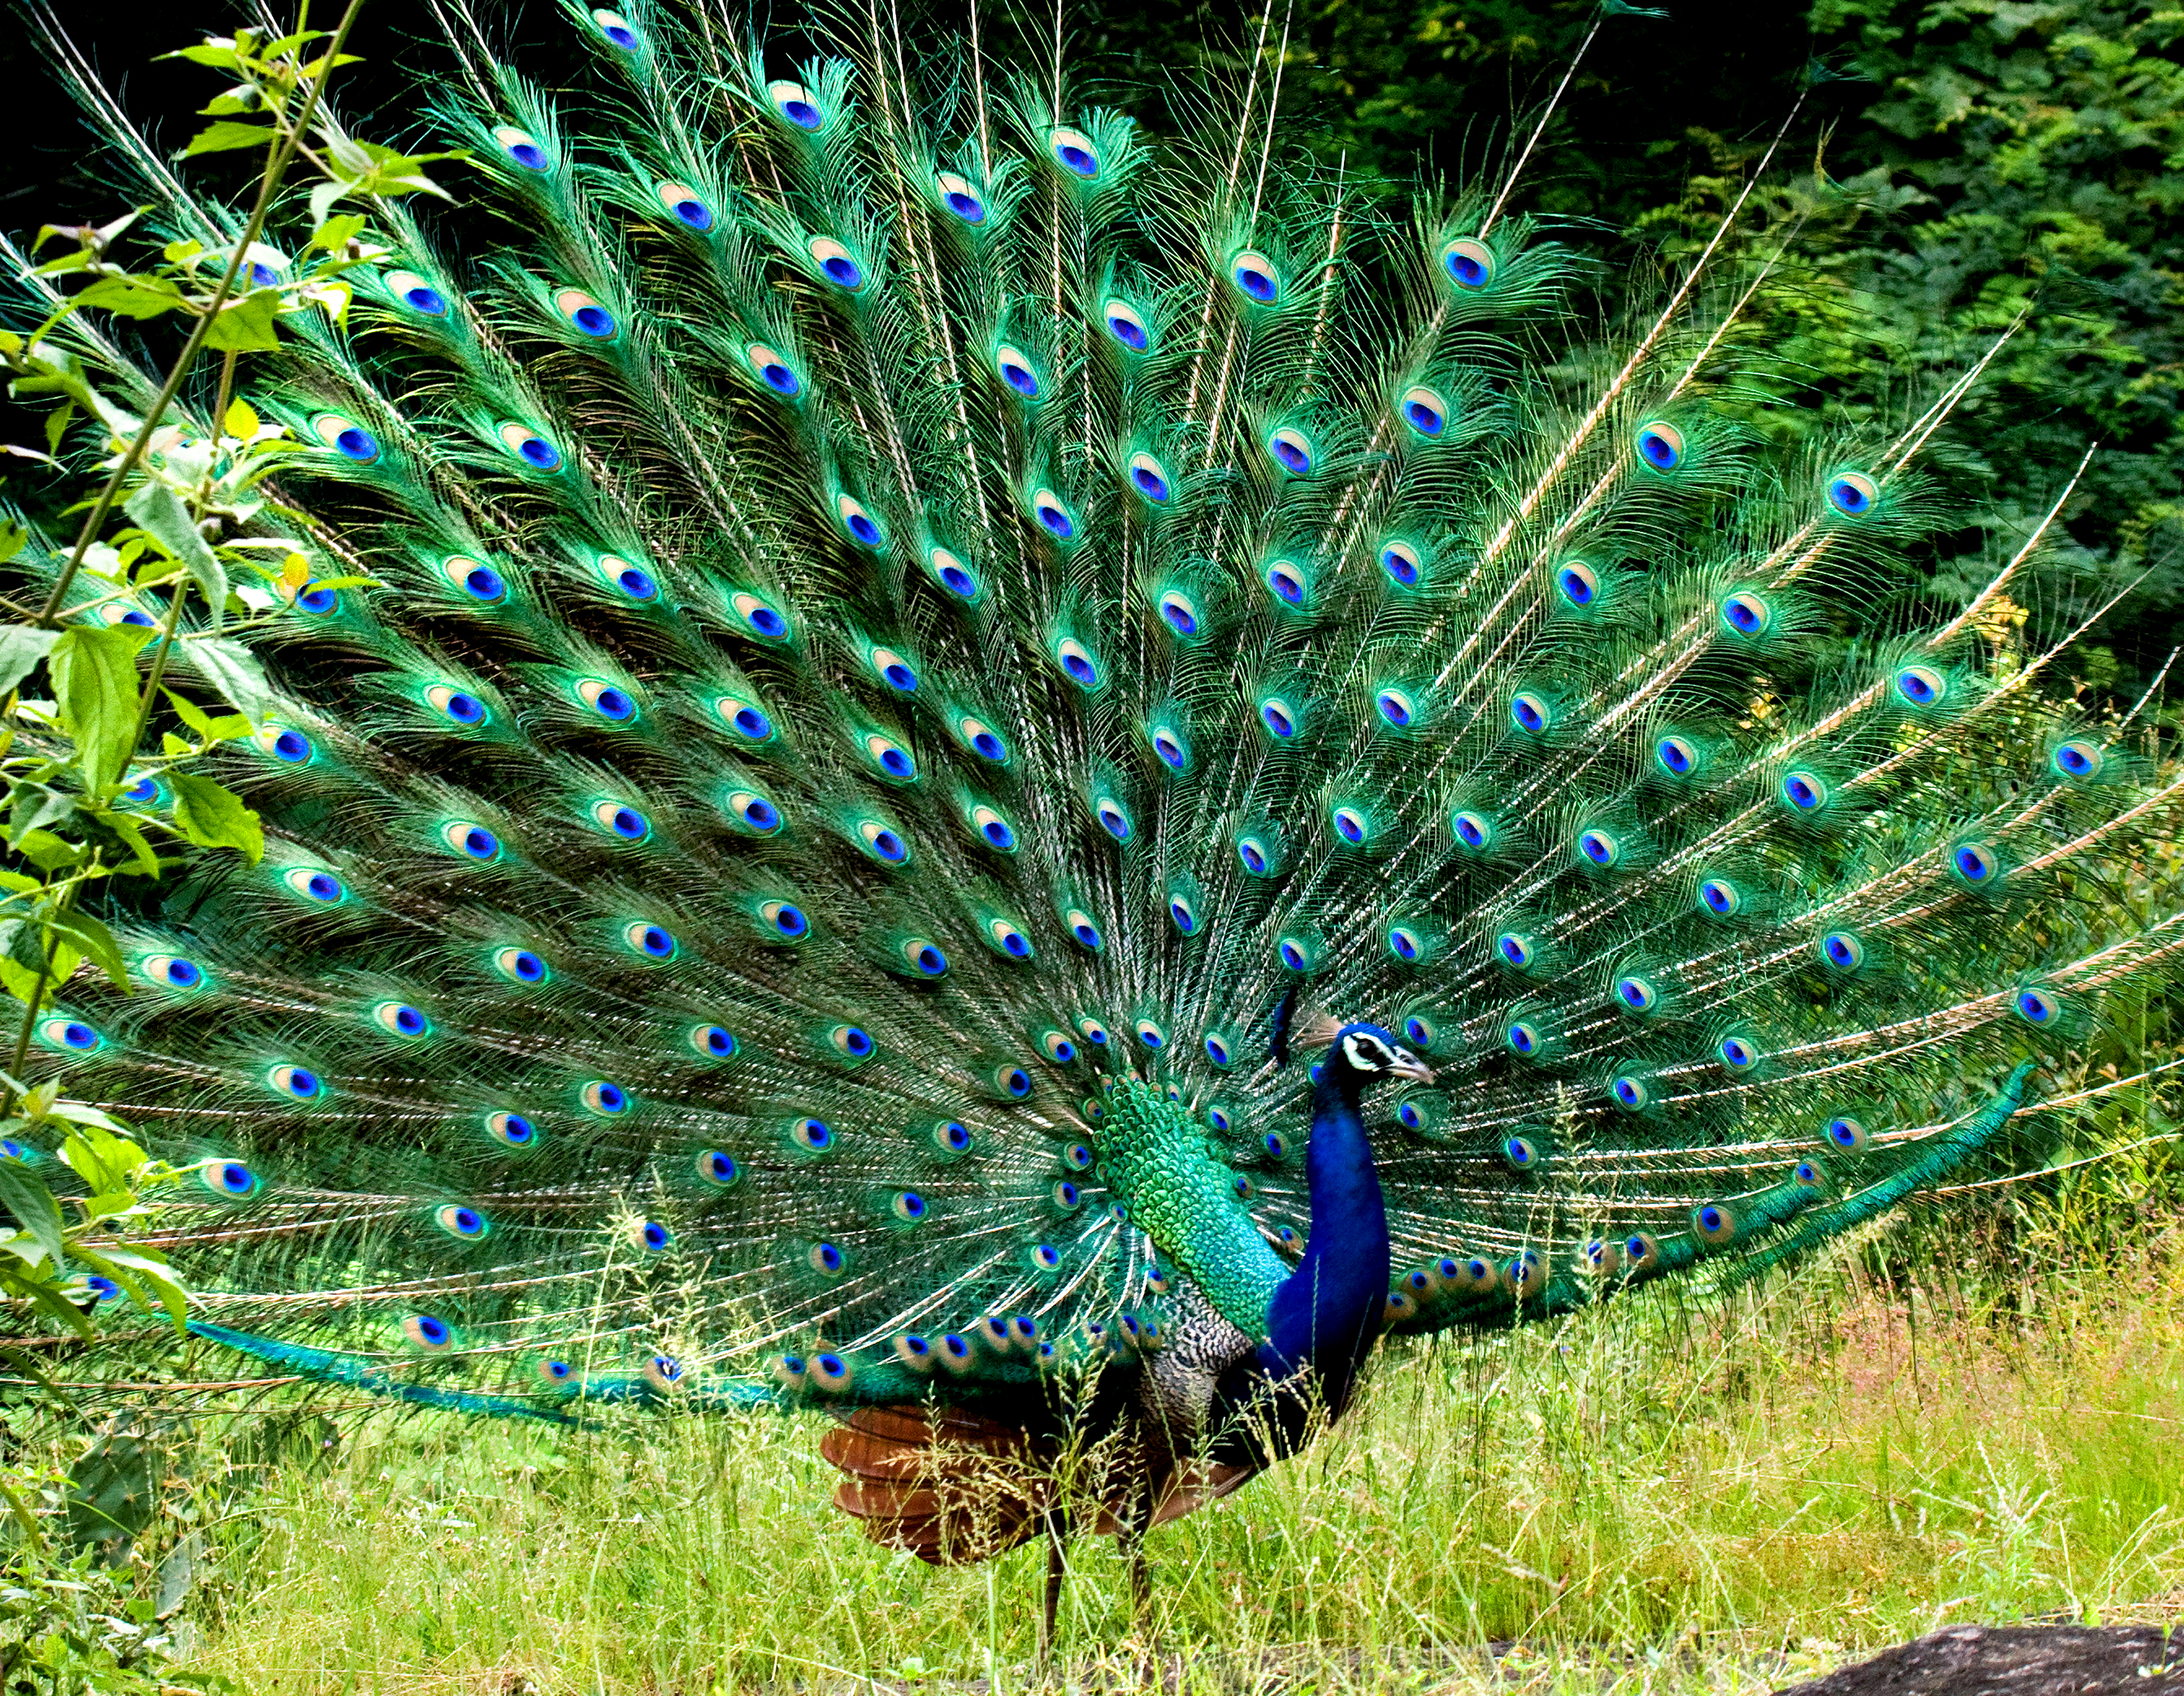 File:Peacock in display by N A Nazeer.jpg - Wikimedia Commons